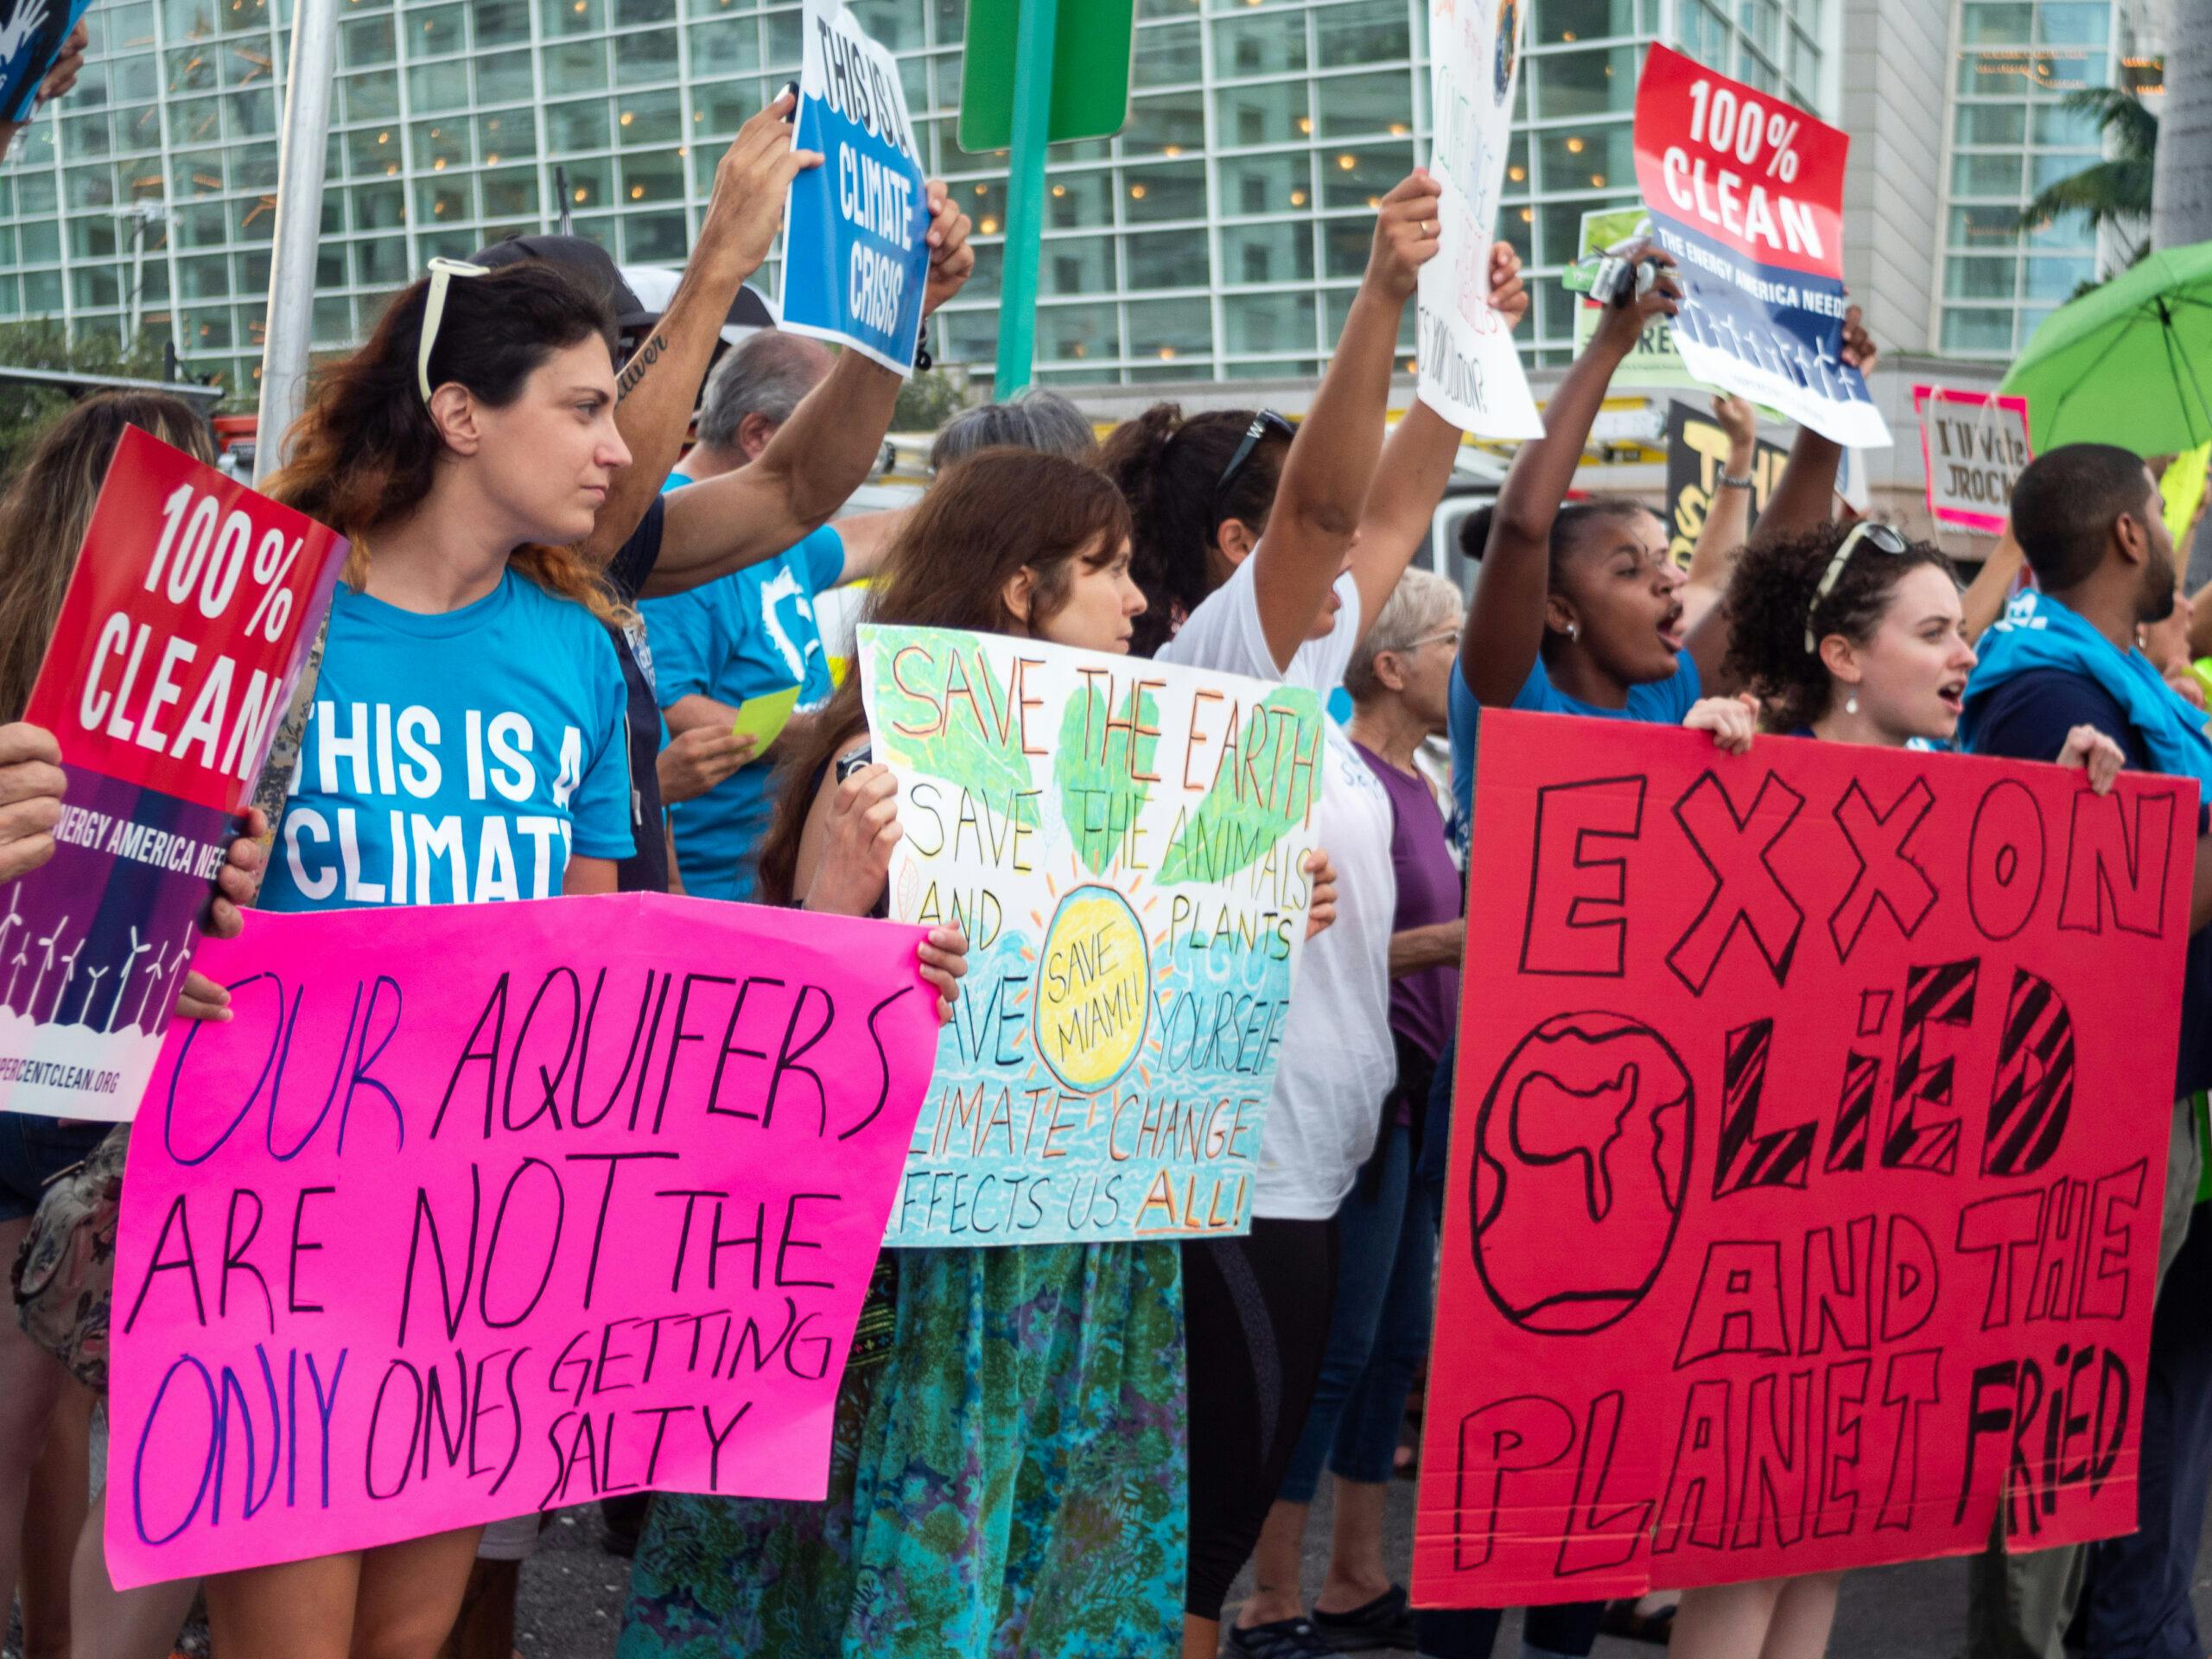 اعتراض اقلیمی در میامی ایالات متحده آمریکا ــ روی یکی از پلاکاردهای نوشته شده: «اکسون دروغ گفت، و سیاره برشته شد.» ــ عکس: شاتراستاک